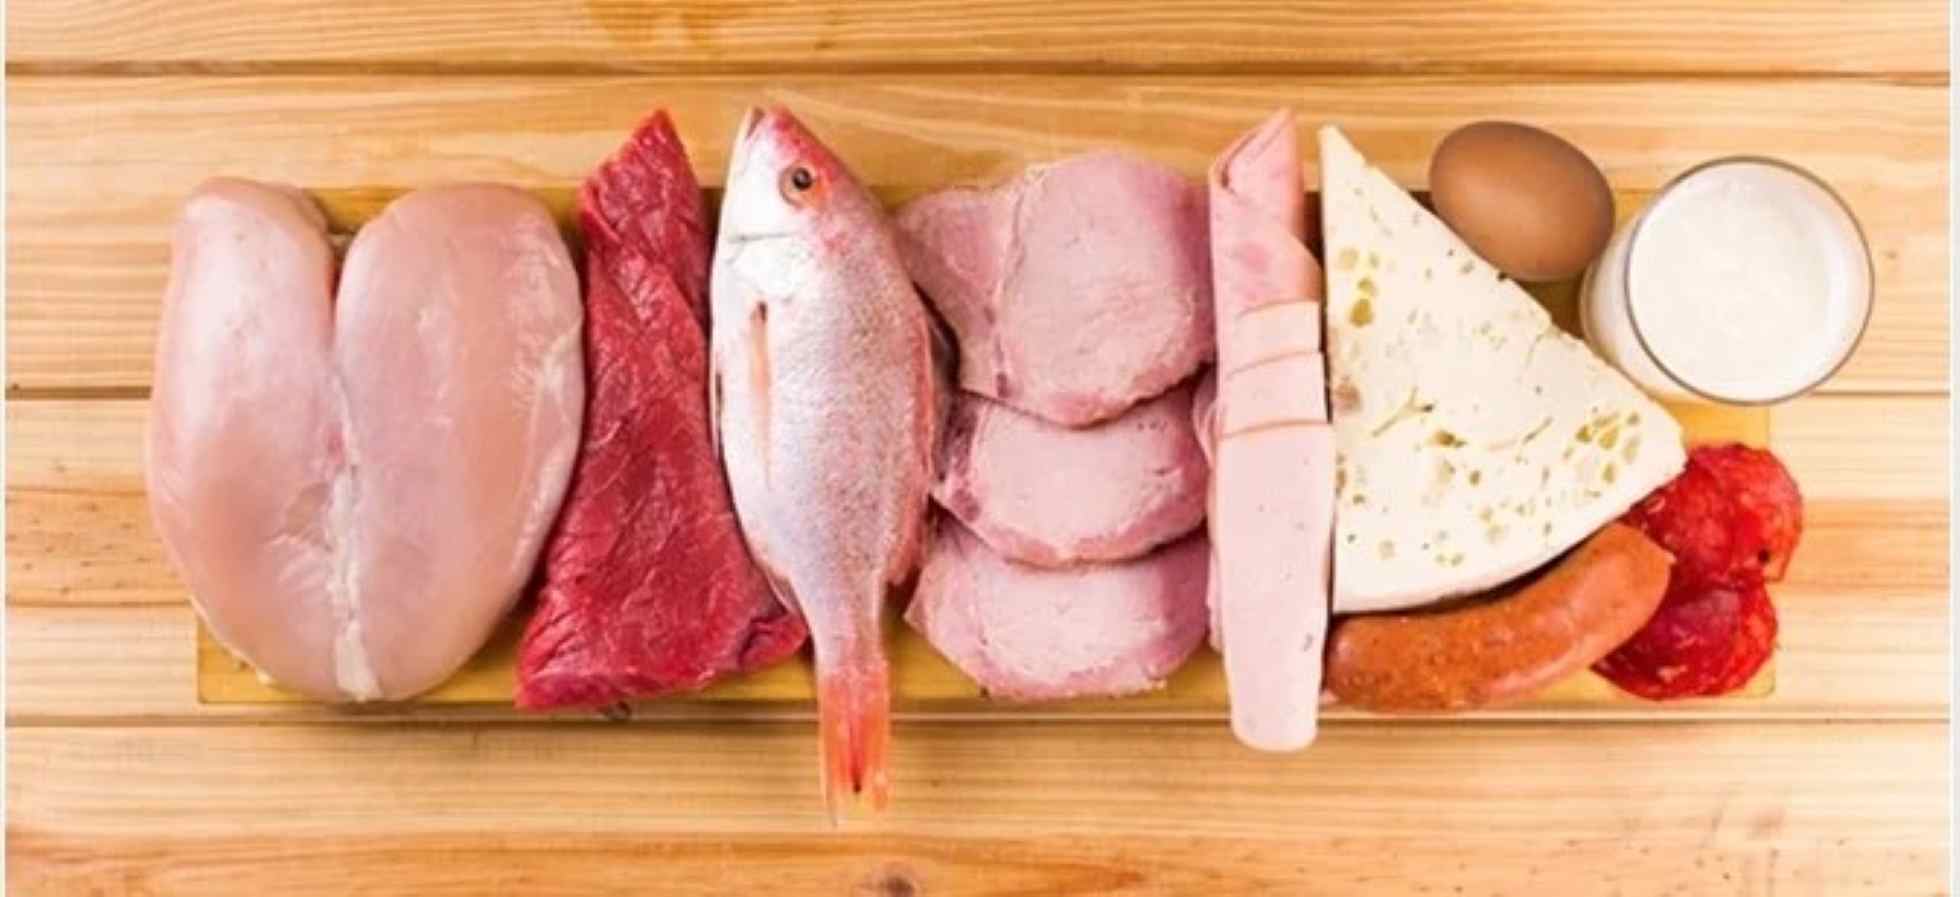 Che proteine mangiare a cena dieta dukan?